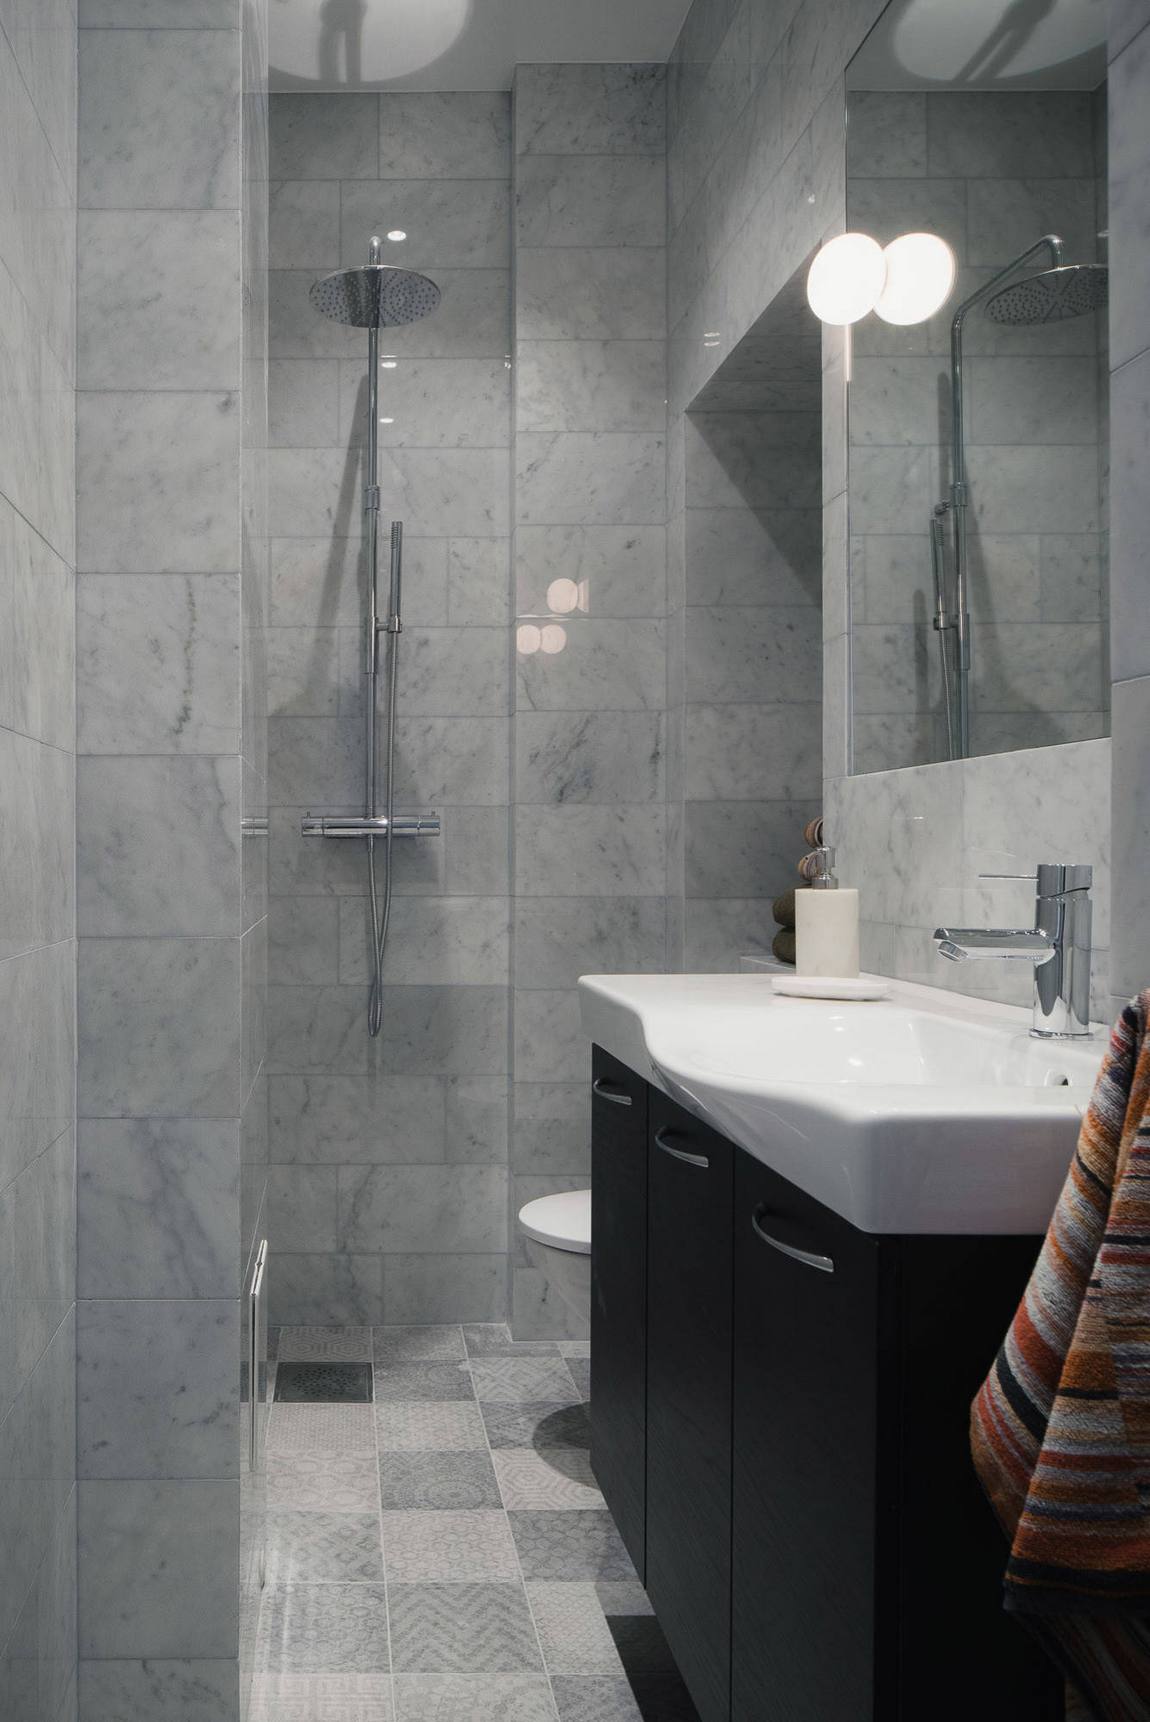 Phòng tắm có thiết kế tối giản từ màu sắc đến nội thất, từ vật liệu gạch ốp lát đến tấm gương kết hợp đèn chiếu sáng đều góp phần giúp không gian trông rộng rãi hơn.